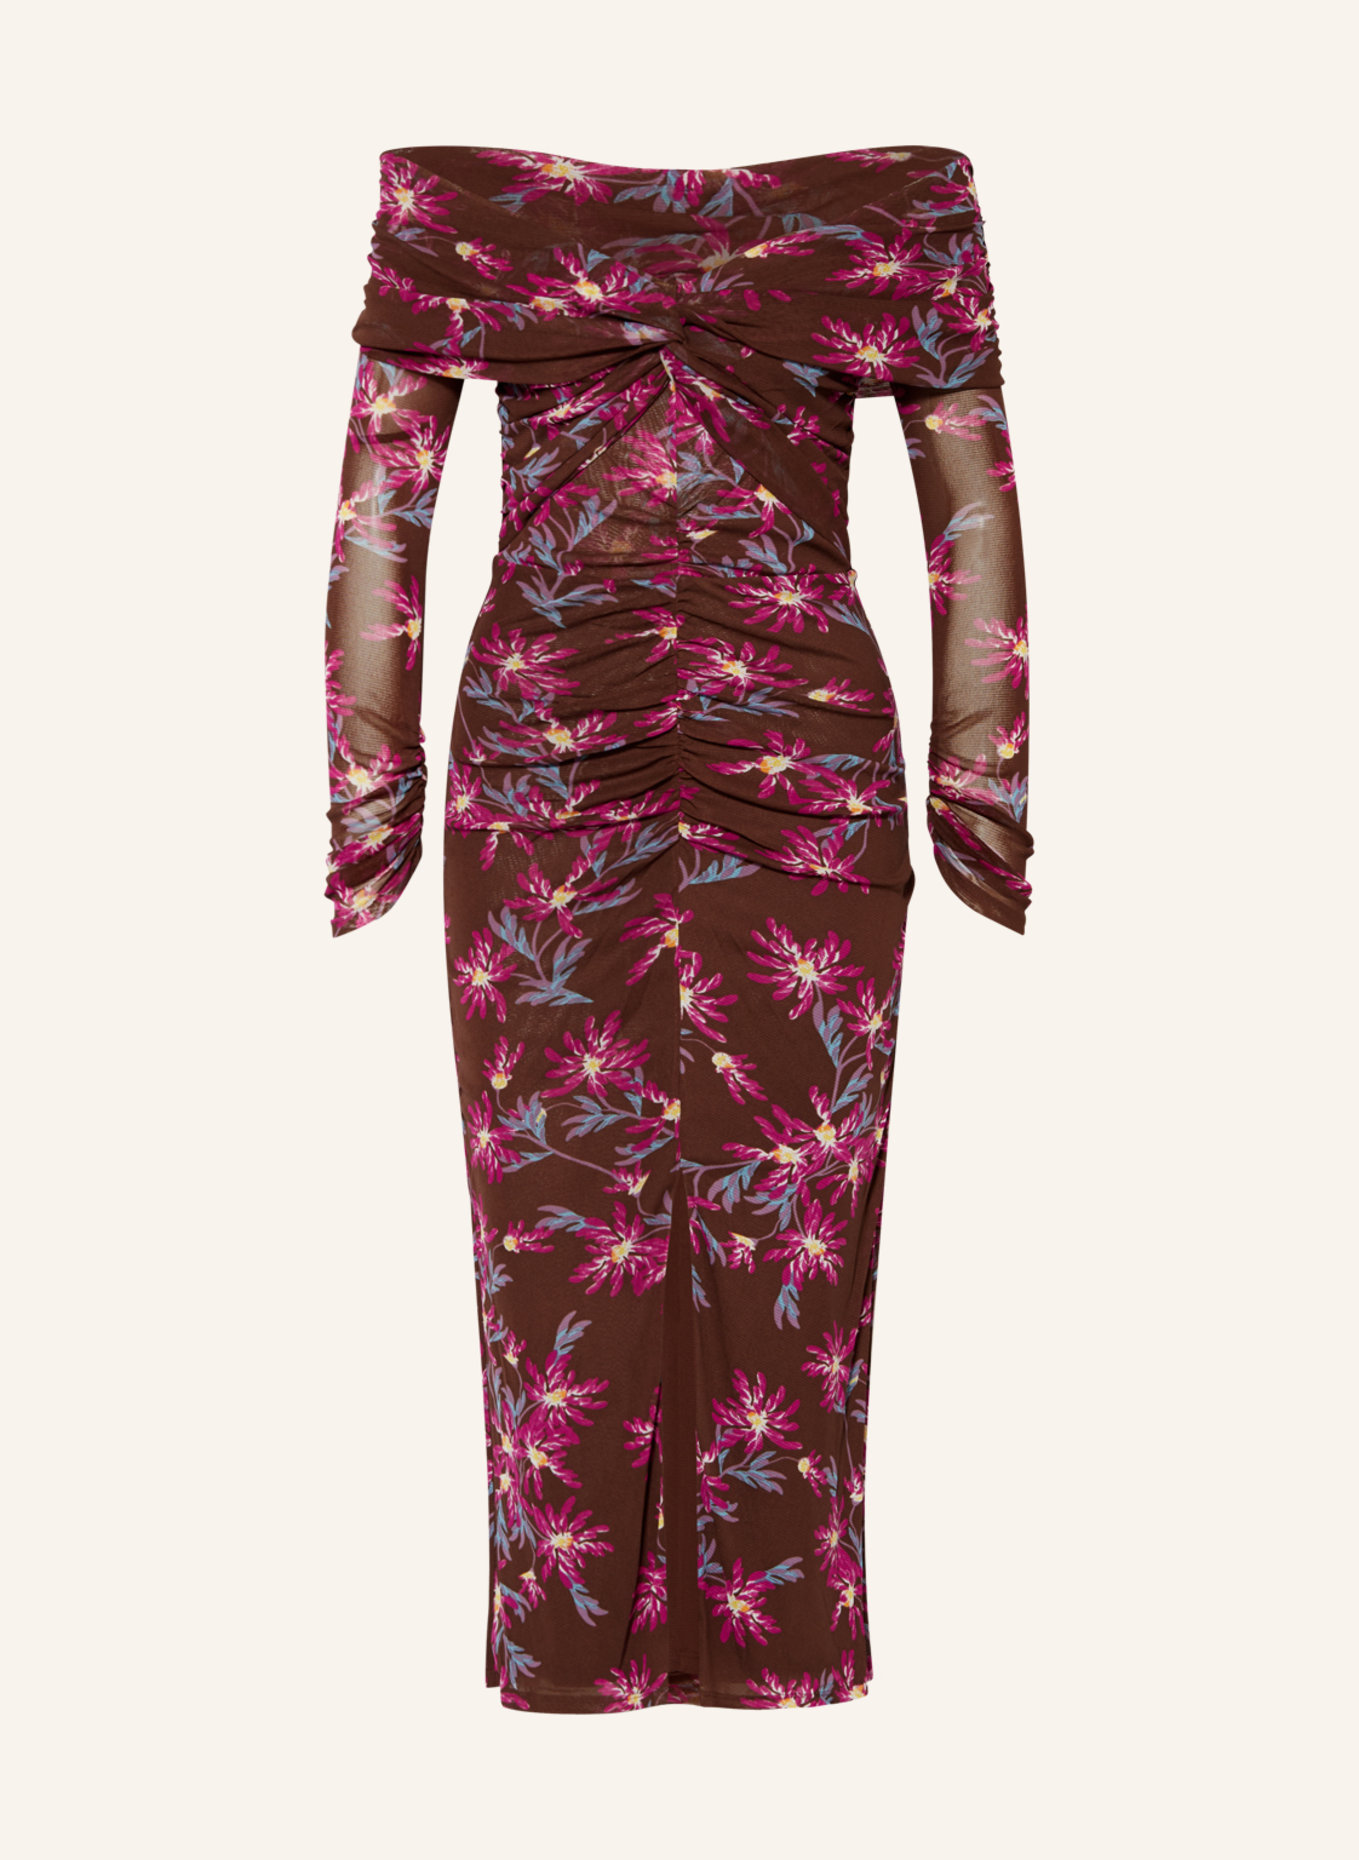 DIANE VON FURSTENBERG Mesh dress CLEMENTINE, Color: DARK BROWN/ FUCHSIA/ YELLOW (Image 1)